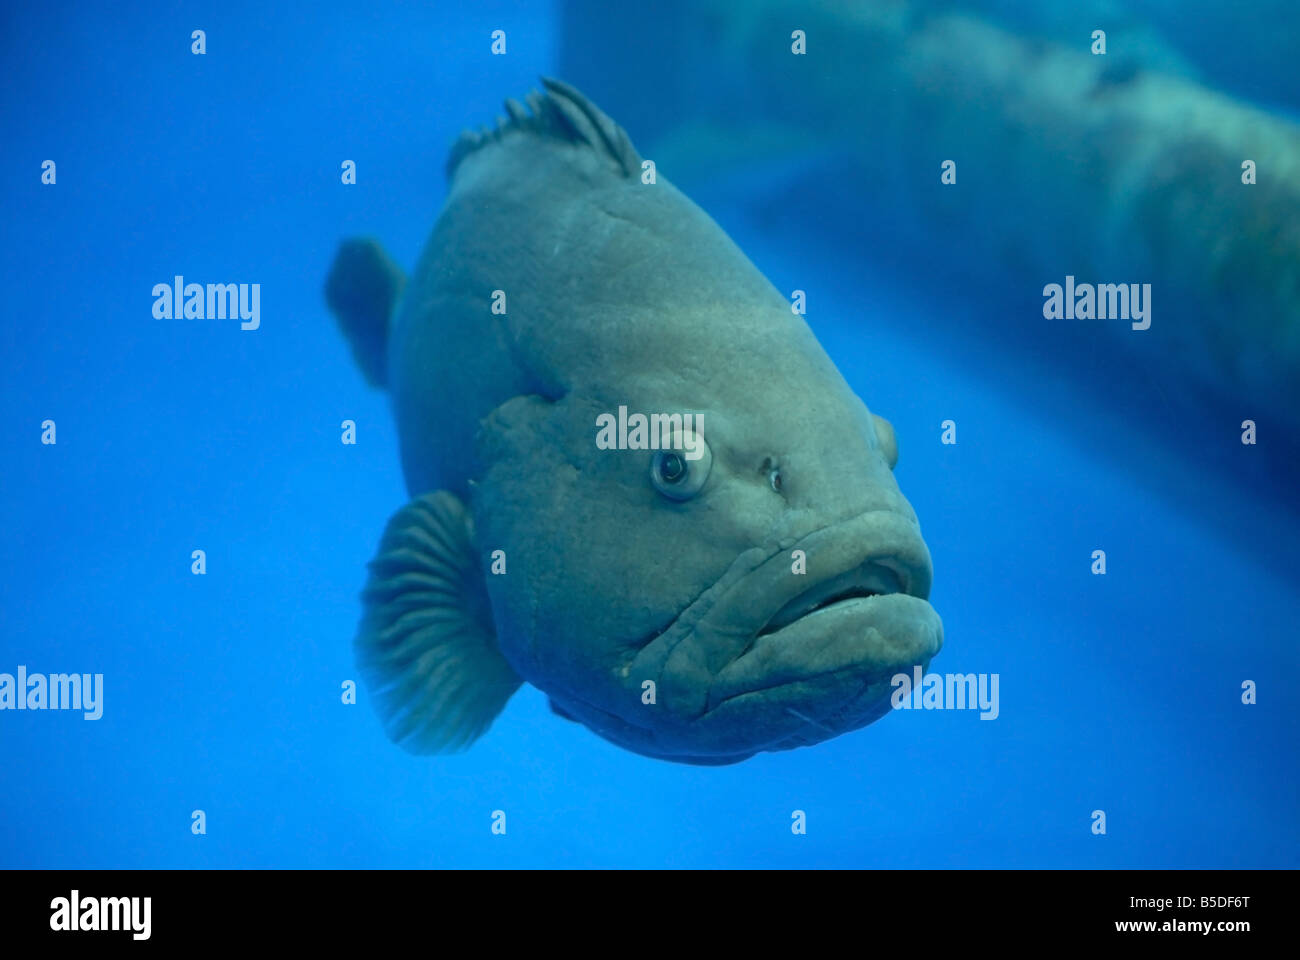 Fish in aquarium Stock Photo